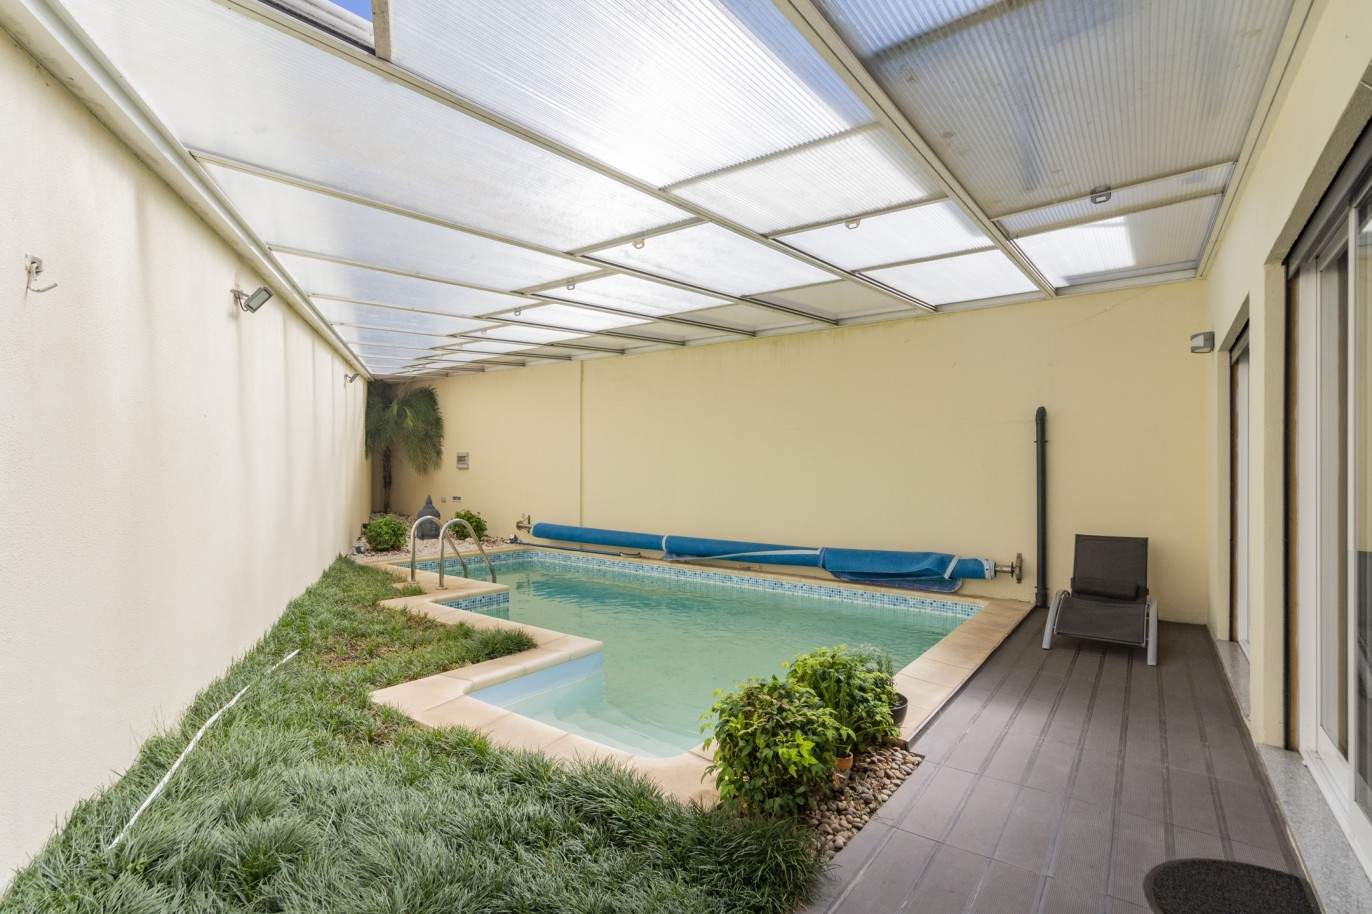 Moradia com piscina jardim, para venda, em Rio Tinto, Gondomar_207851